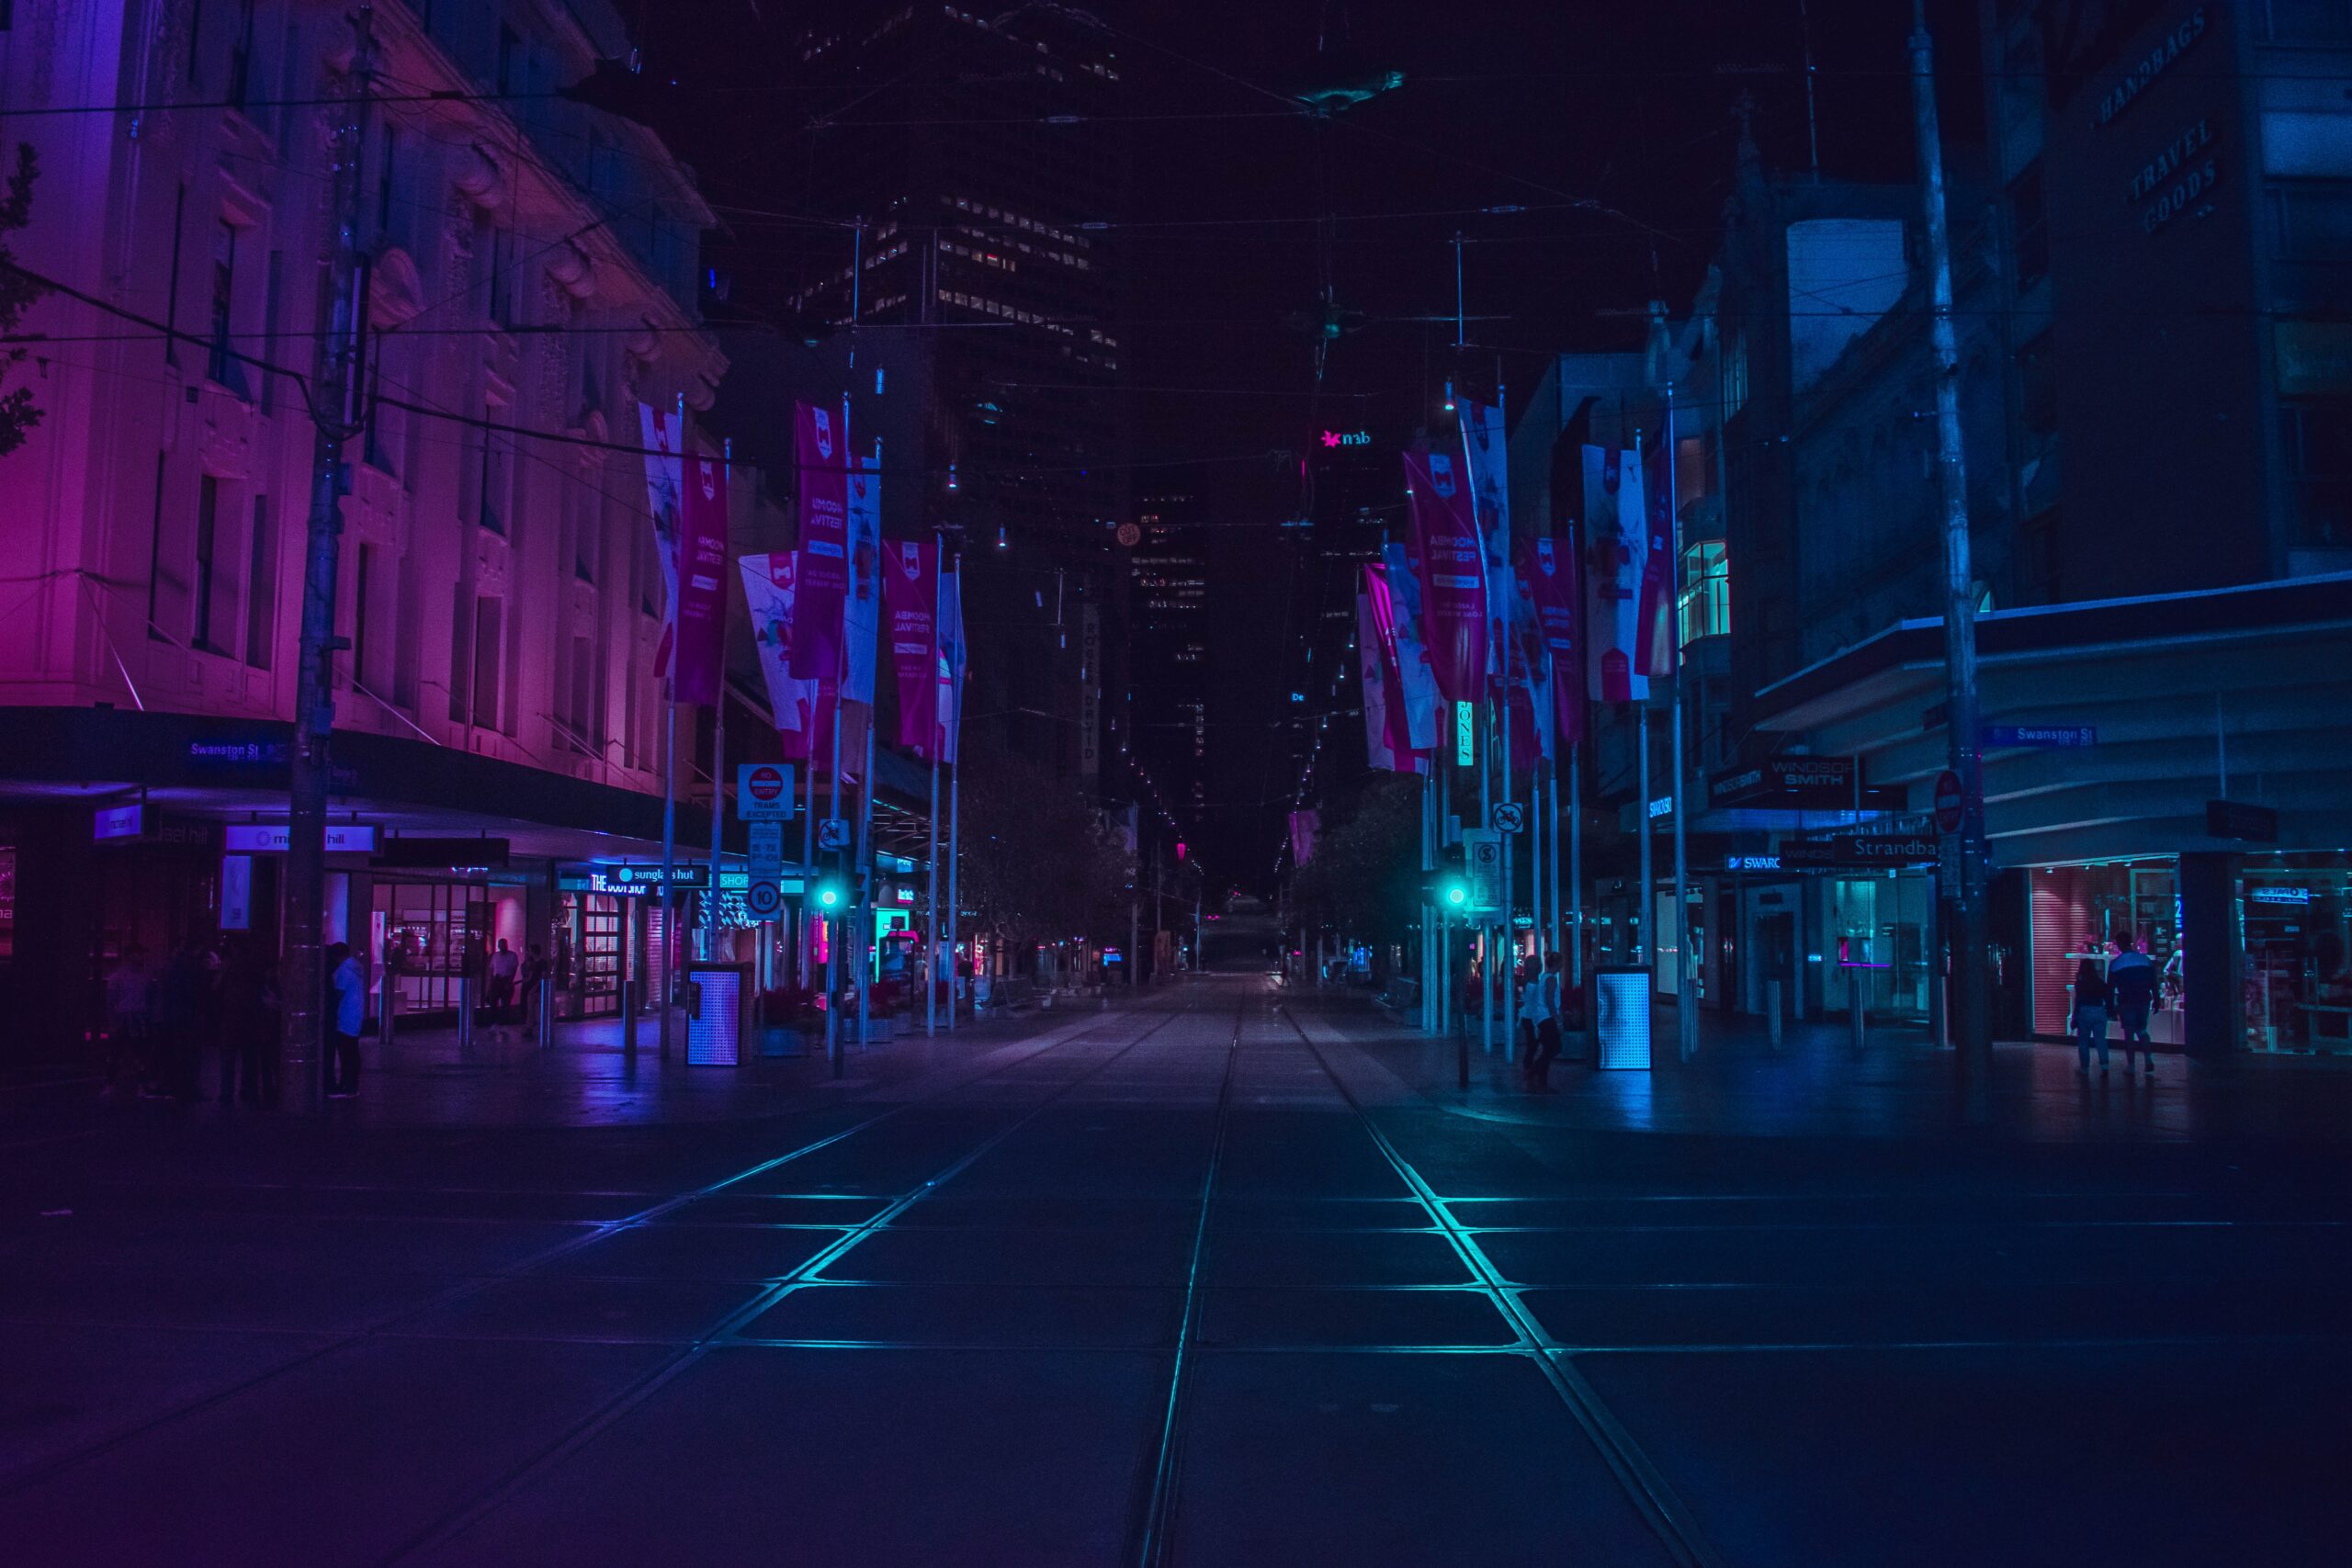 Der Blick bei Nacht auf eine Straße und umliegende Gebäude. Alles ist in bläulichen und Romanen Farben ausgeleuchtet, die Szene wirkt futuristisch.